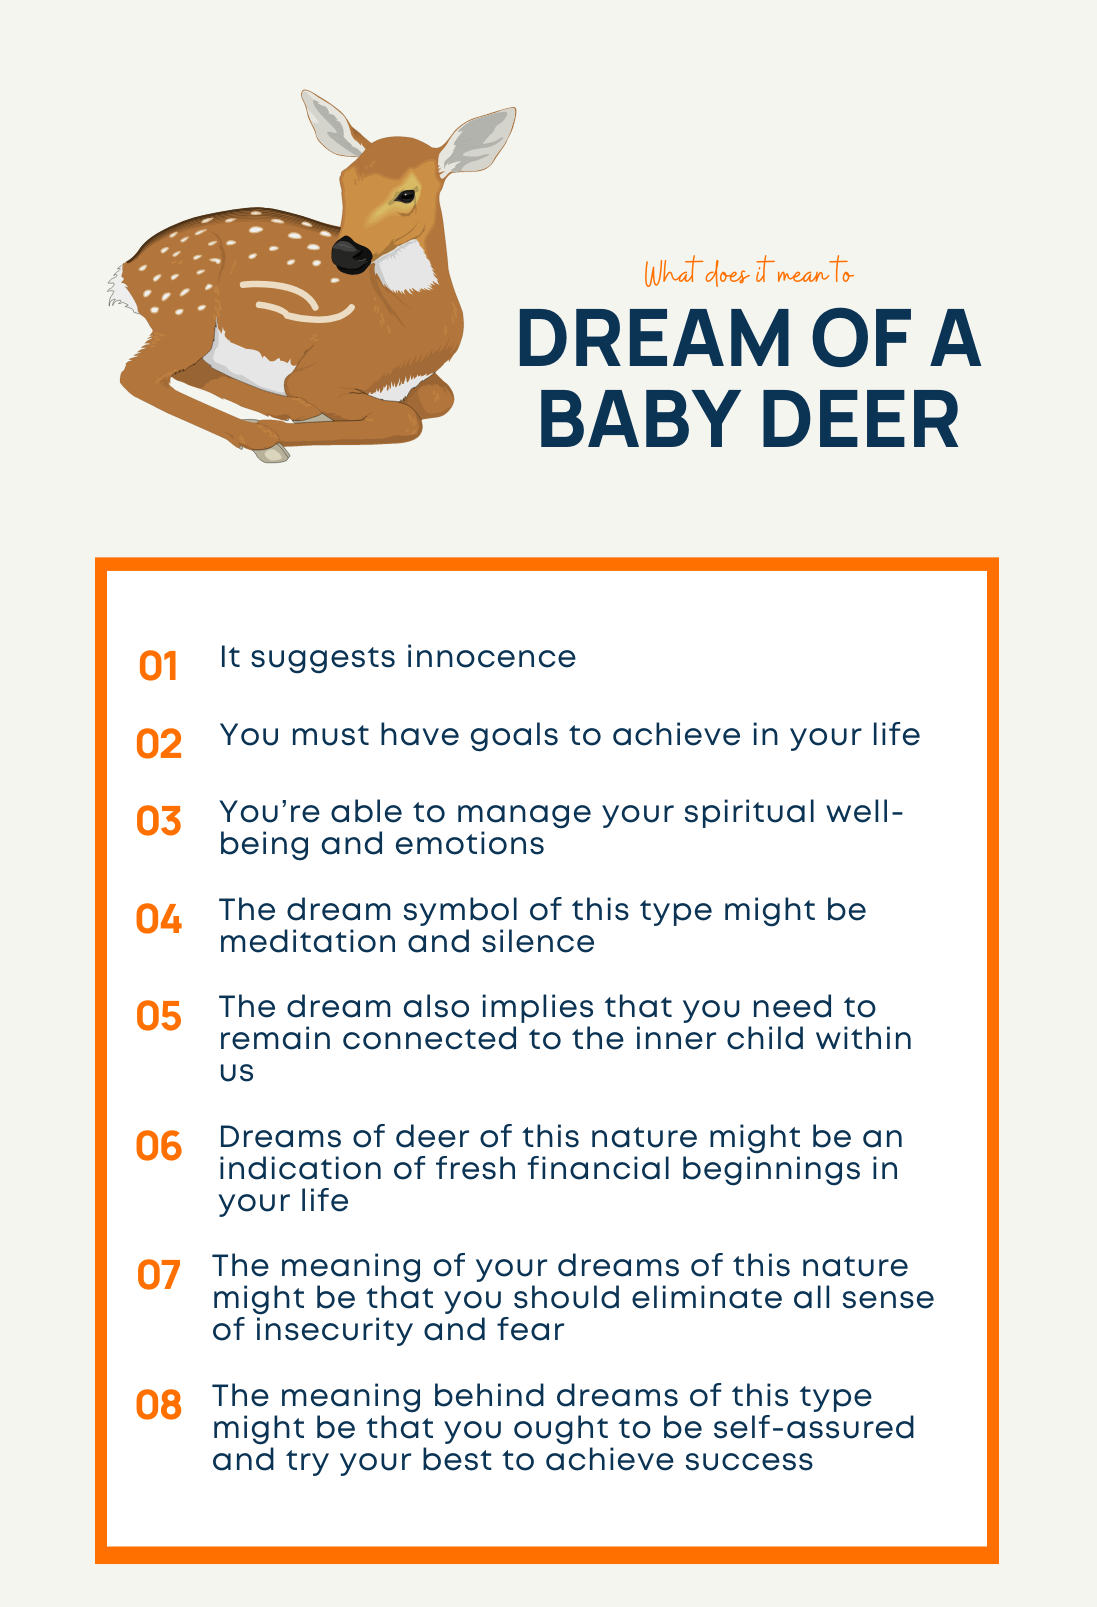 Dreams of a Baby Deer